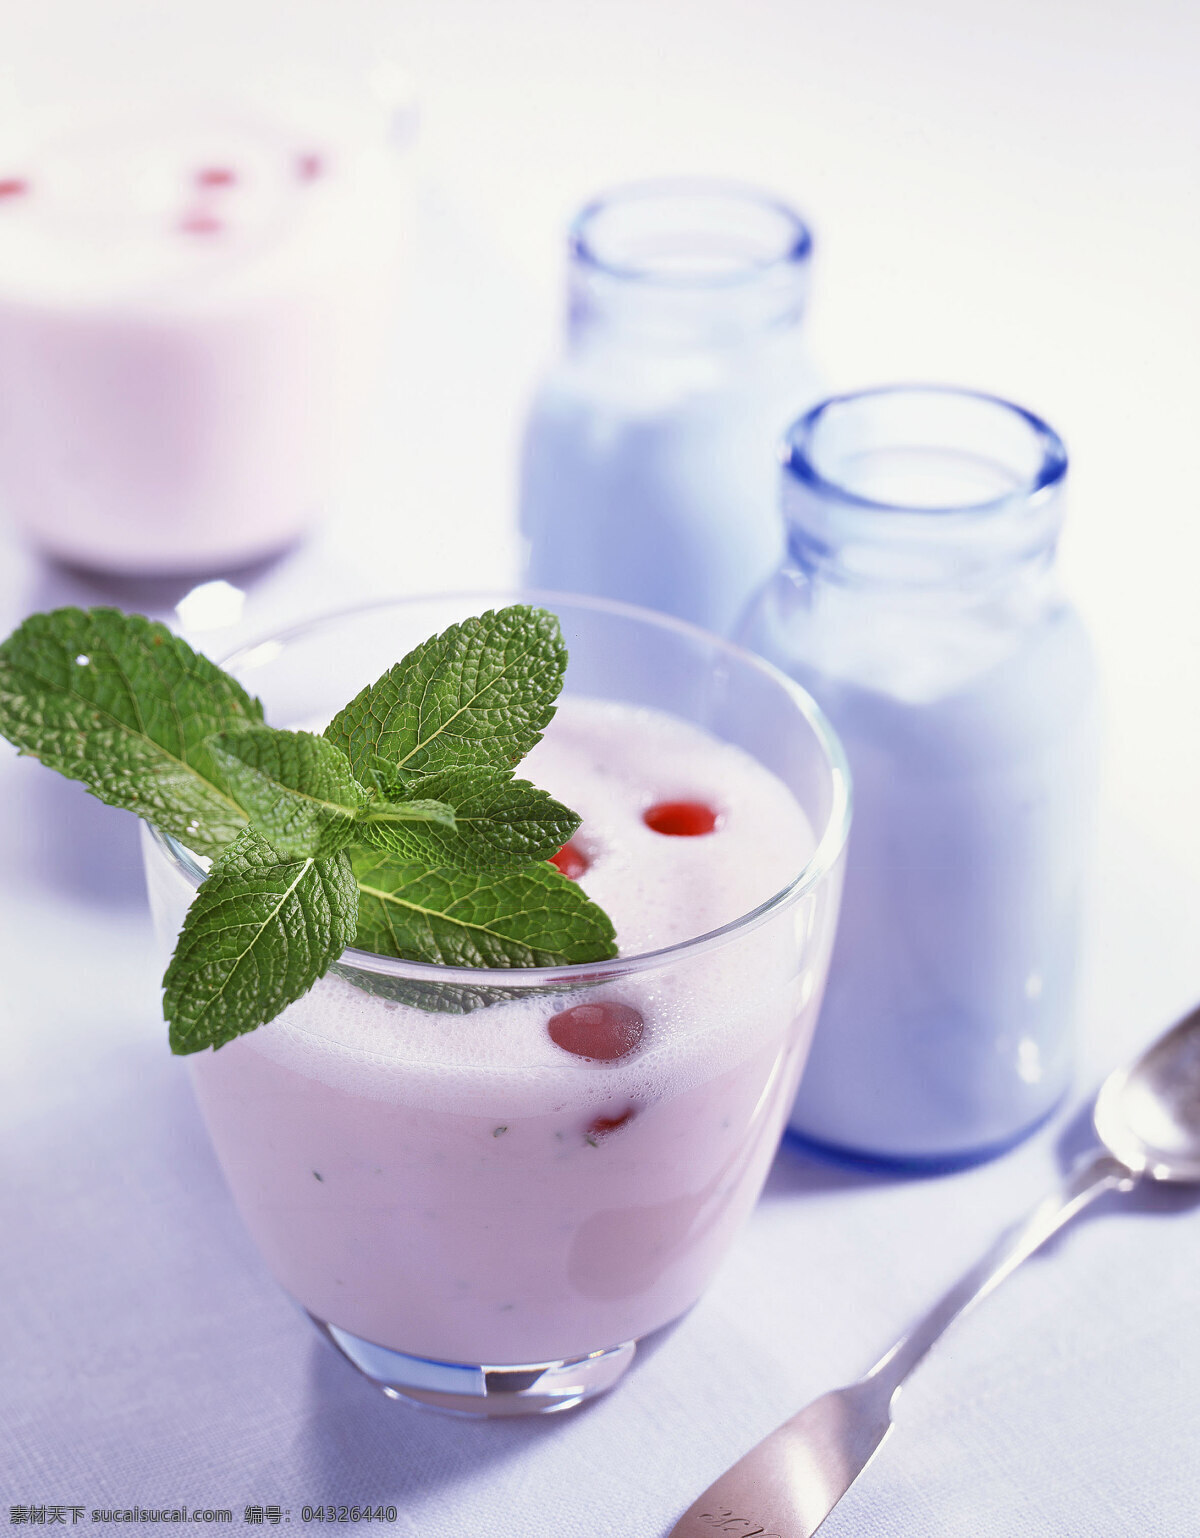 蓝莓酸奶 蓝莓 酸奶 牛奶 薄荷 草莓 美食 西餐美食 餐饮美食